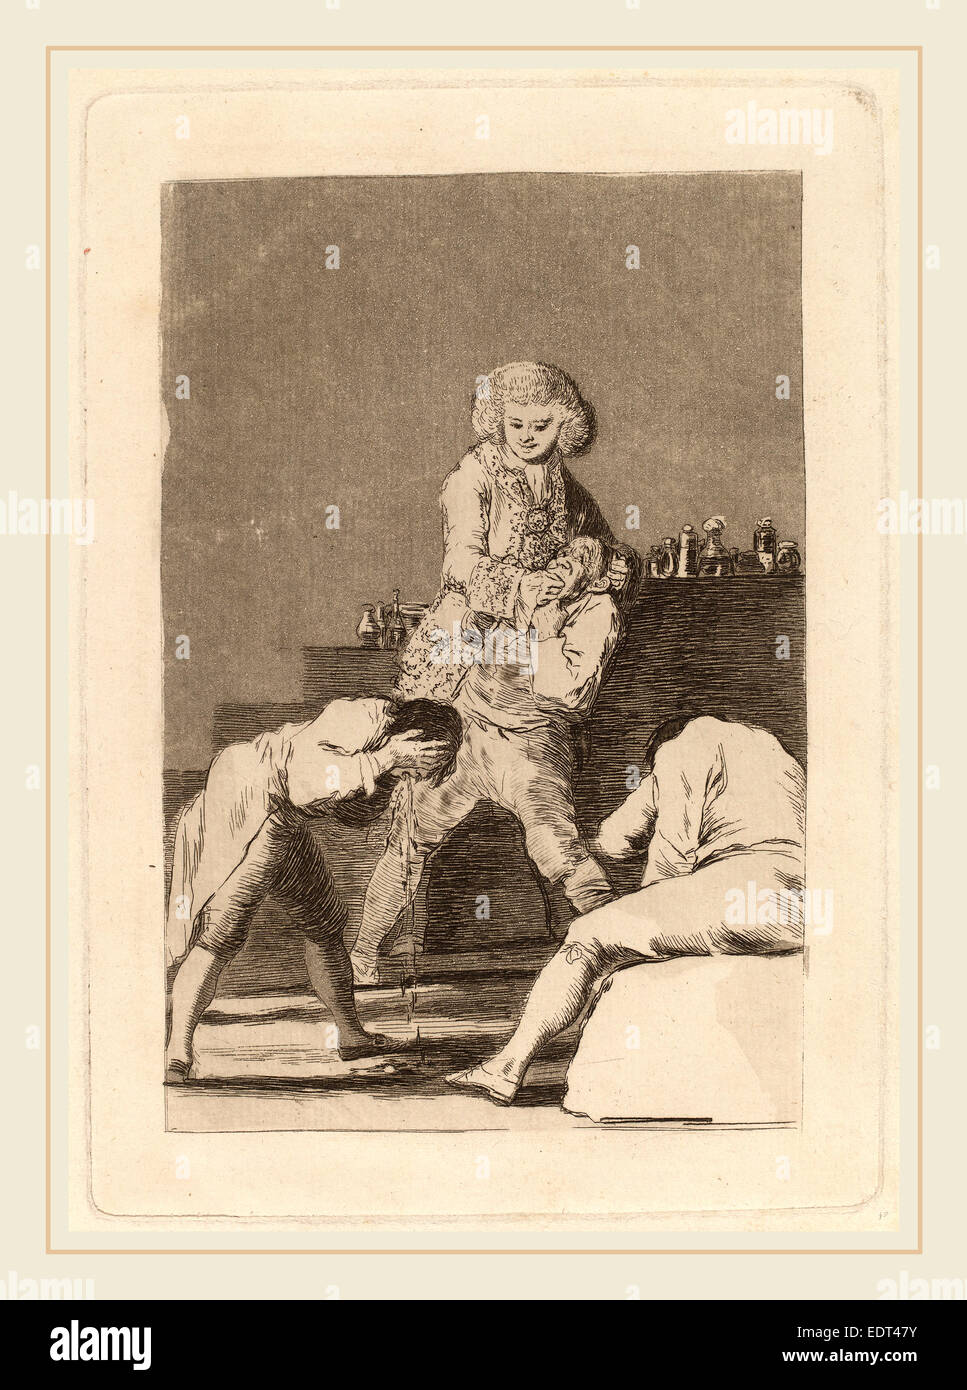 Francisco de Goya, Al Conde Palatino (zum Pfalzgrafen), Spanisch, Aquatinta 1746-1828, in oder vor 1799, Radierung, Kaltnadelradierung Stockfoto